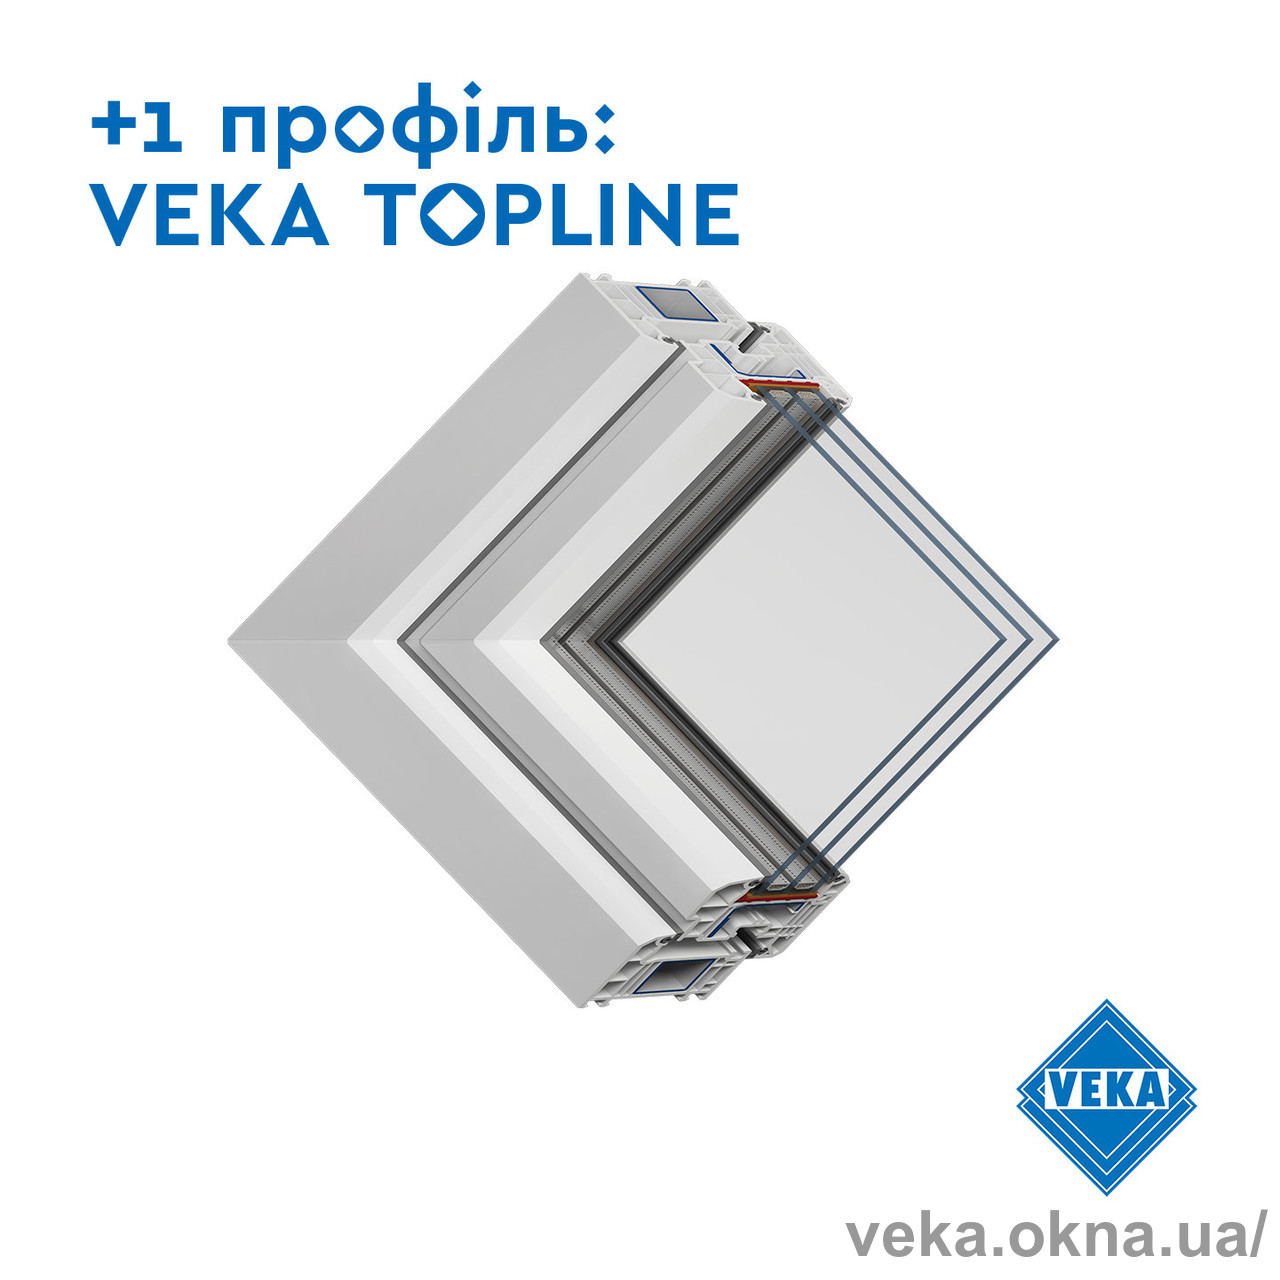 VEKA Украина выводит на рынок профиль TOPLINE